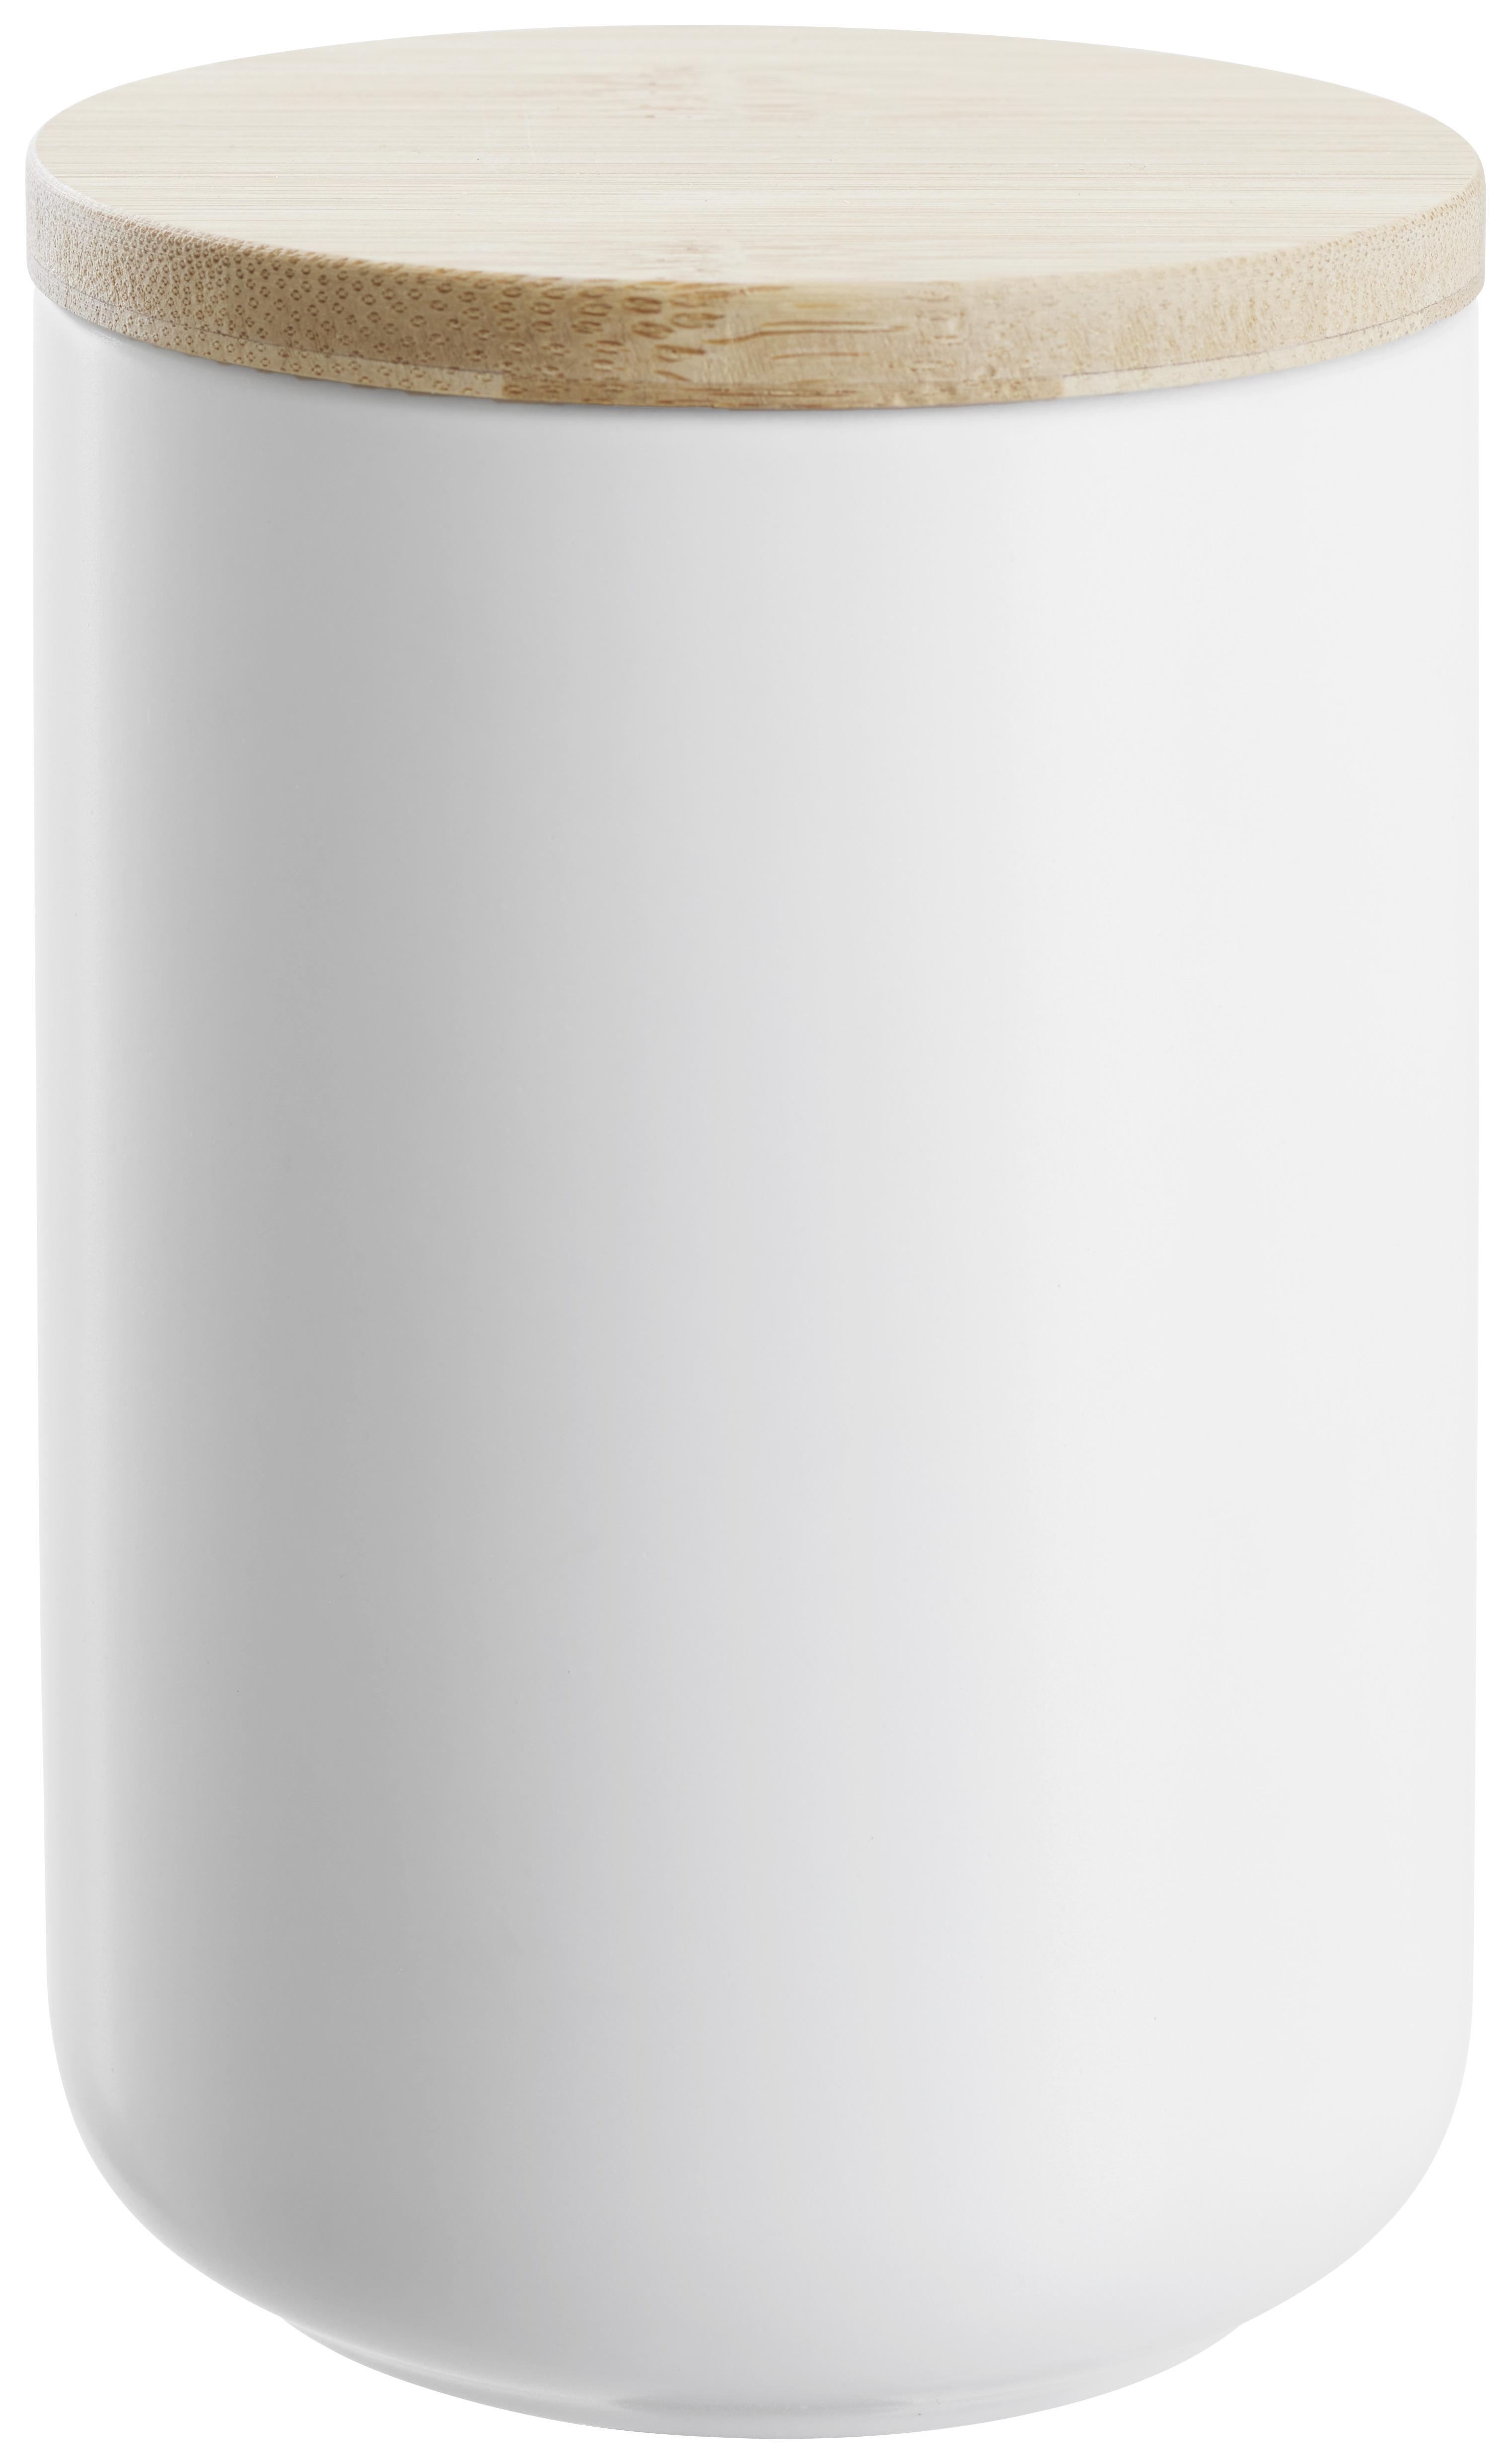 Vorratsdose Svea 0,7L in Weiß - Naturfarben/Weiß, MODERN, Holz/Keramik (10/14,5cm) - Premium Living